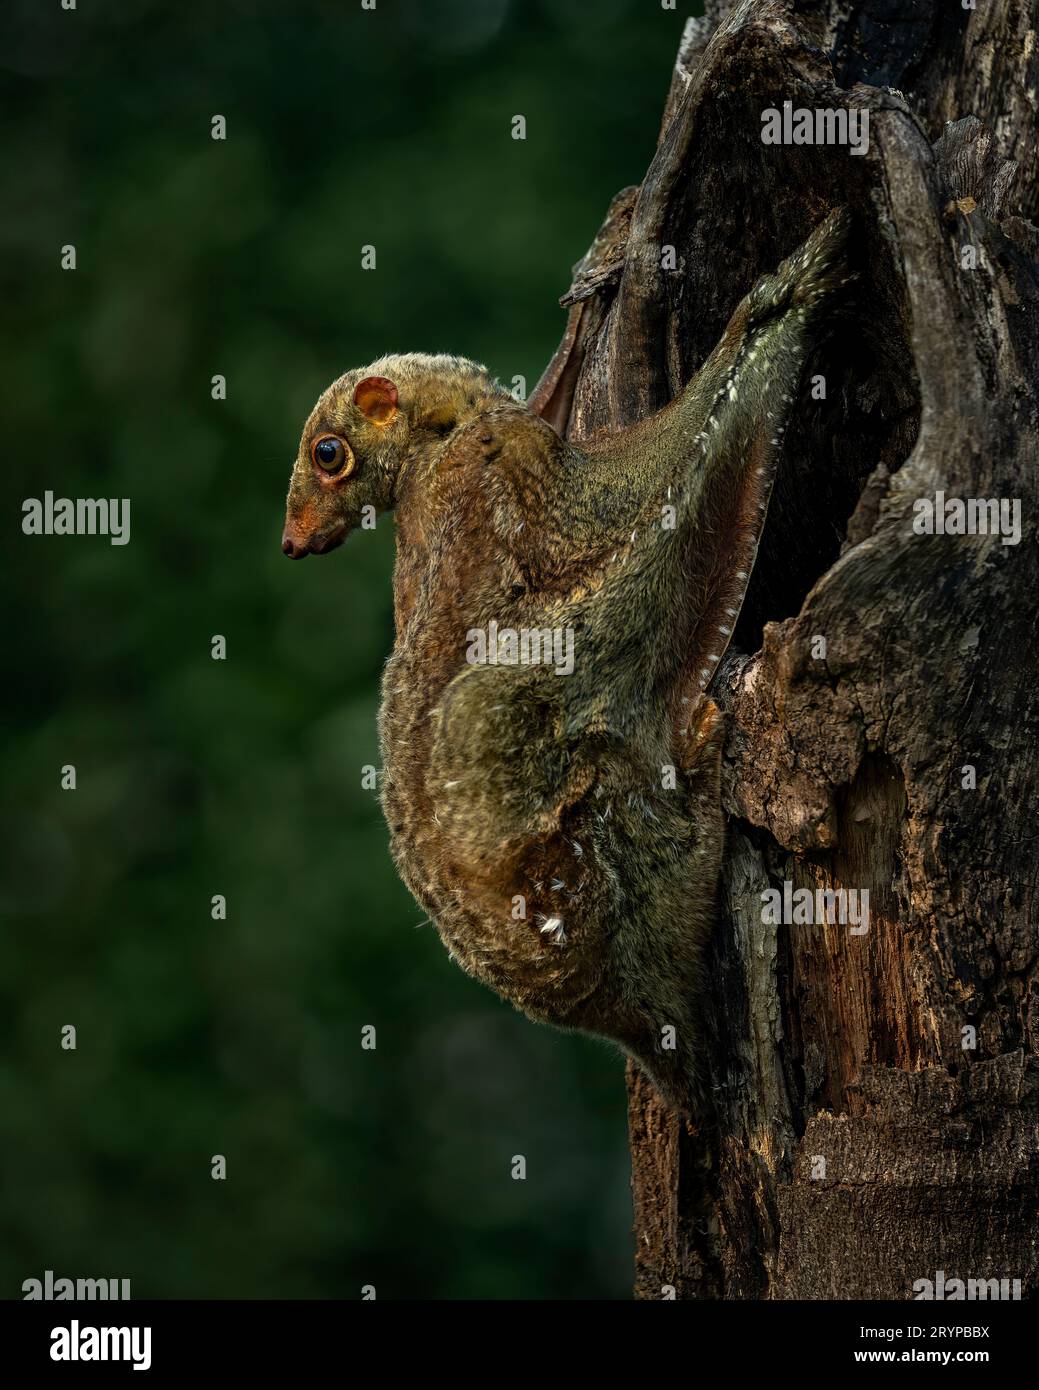 Afferrare l'albero. SERANG, INDONESIA: Immagini INCREDIBILMENTE RARE mostrano un Colugos sapientemente camuffato che stringe un albero prima che salga inaspettatamente Foto Stock